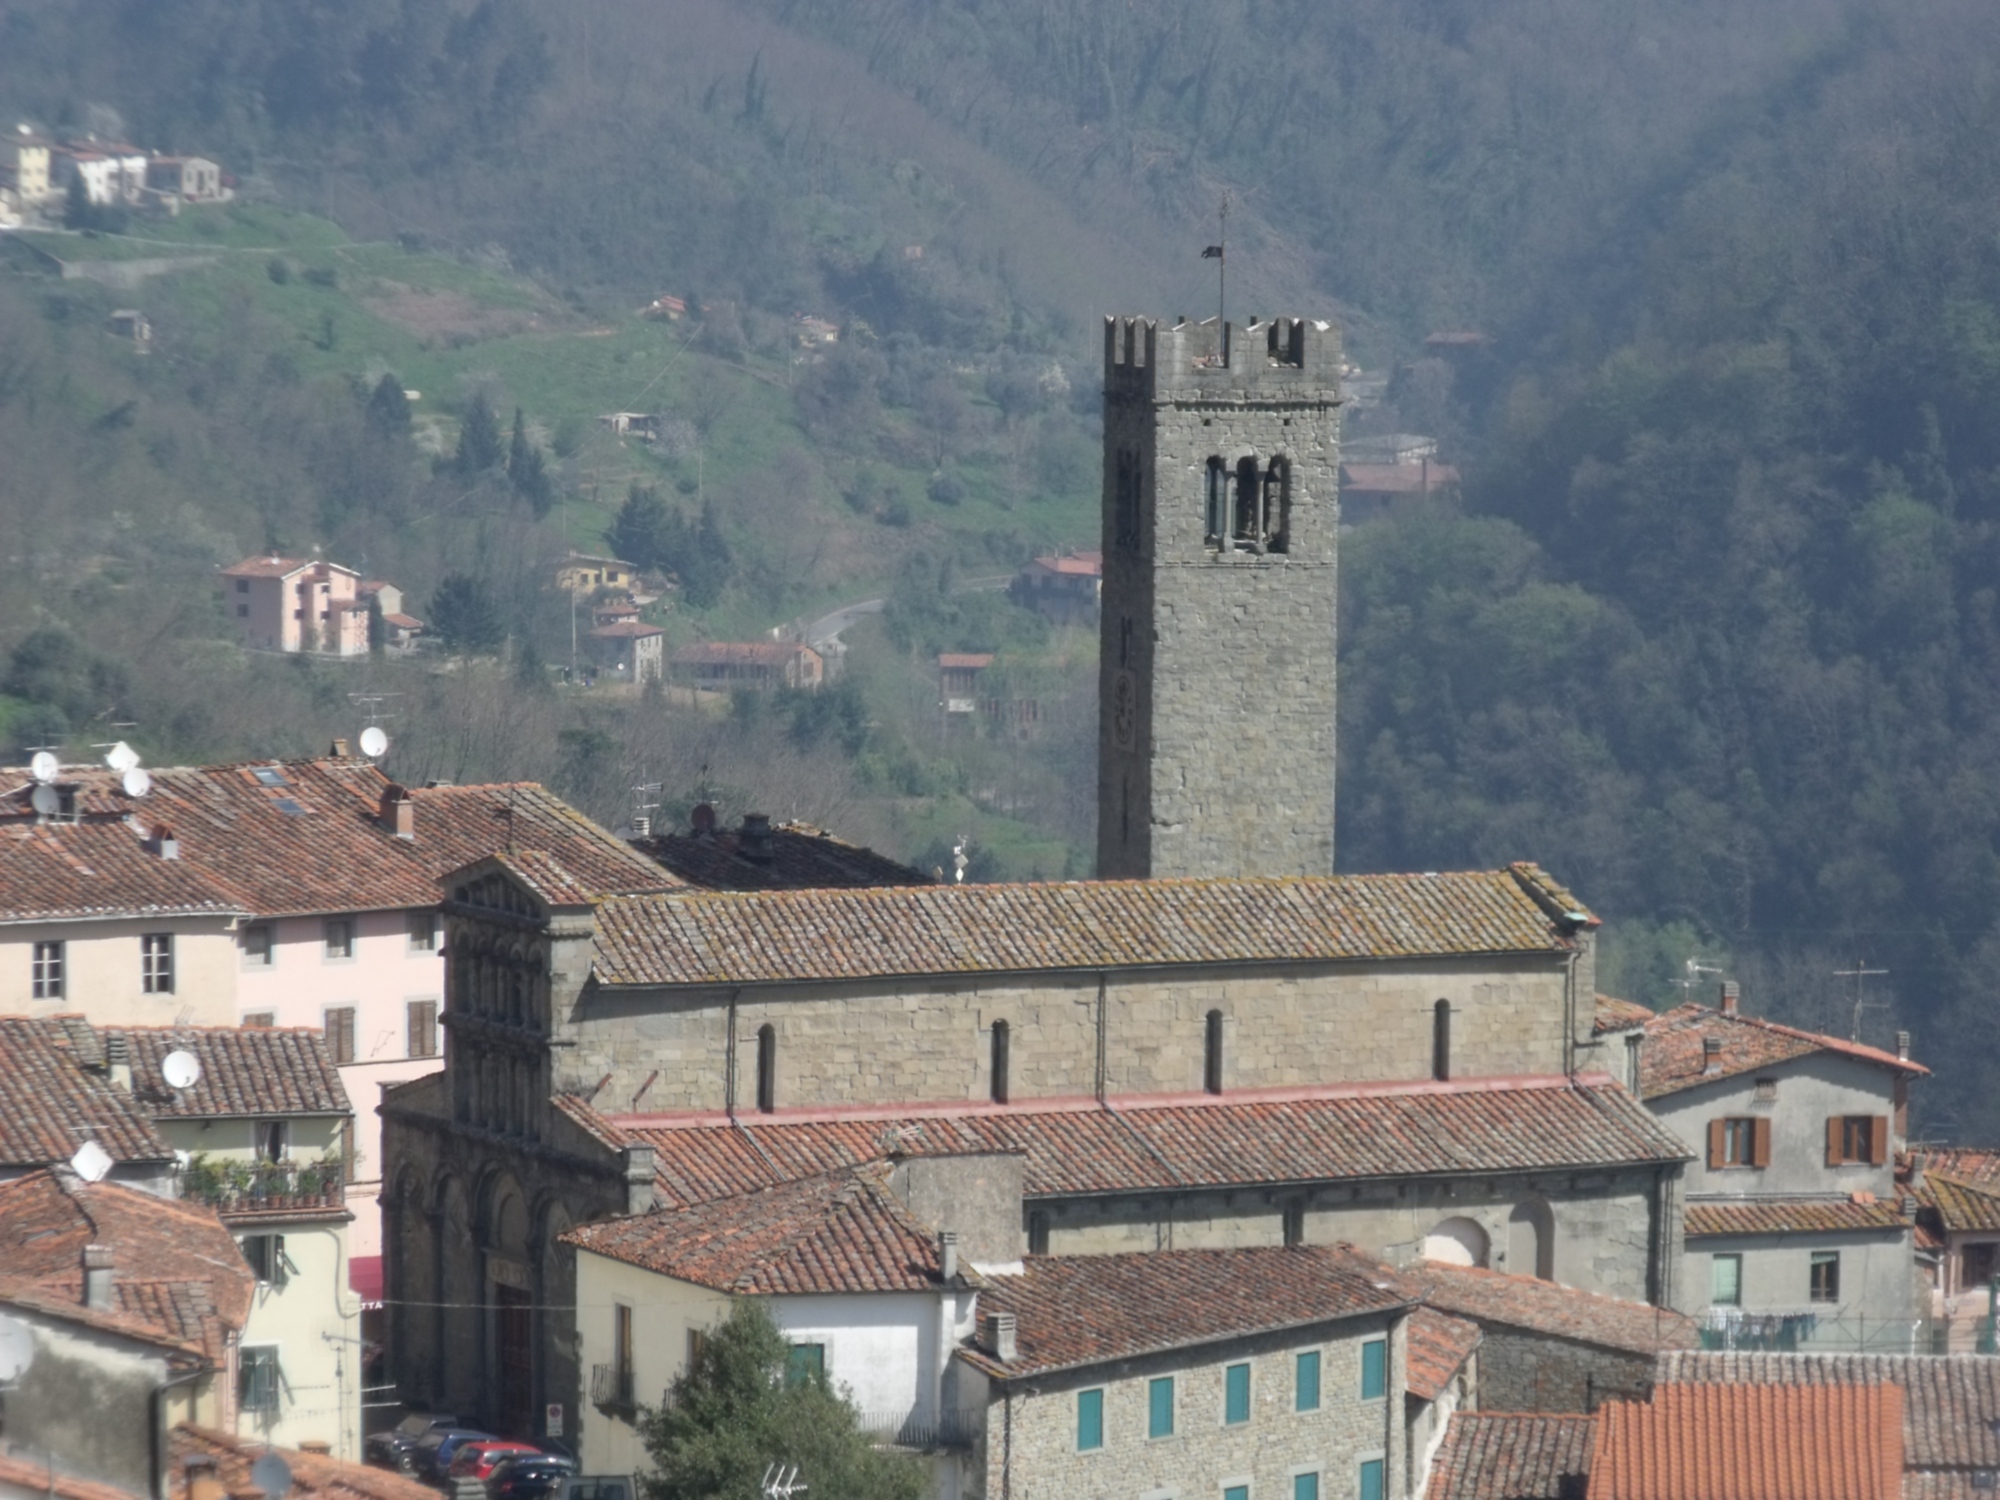 Villa Basilica Pieve Santa Maria Assunta